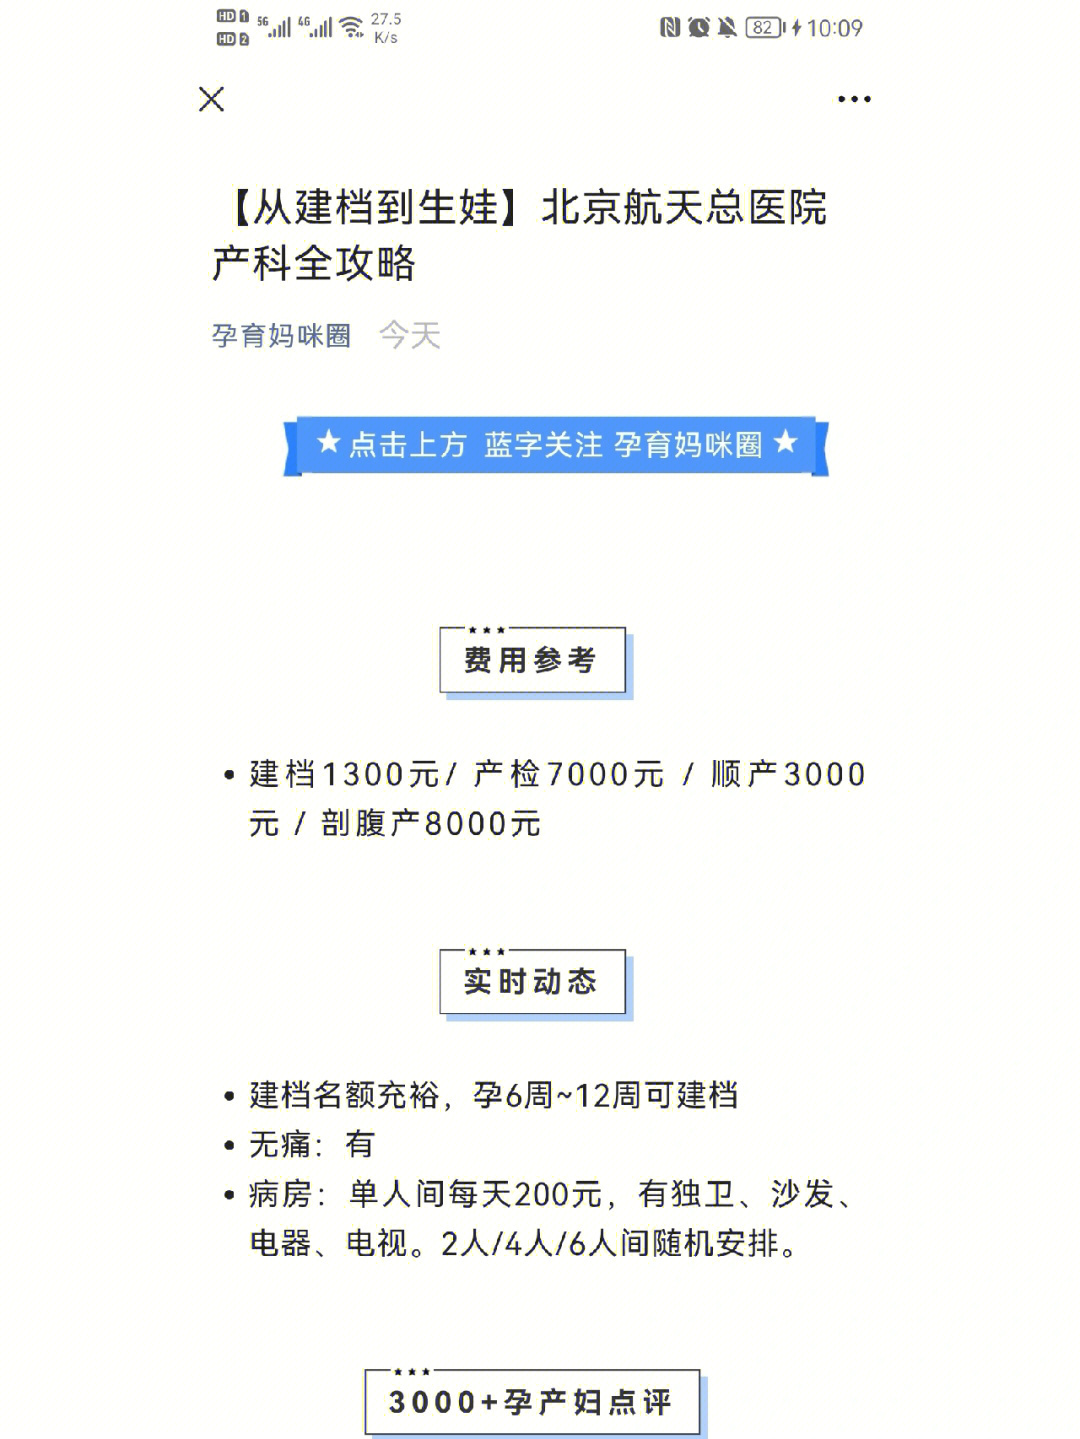 北京航天总医院号贩子挂号电话,欢迎咨询方式行业领先的简单介绍